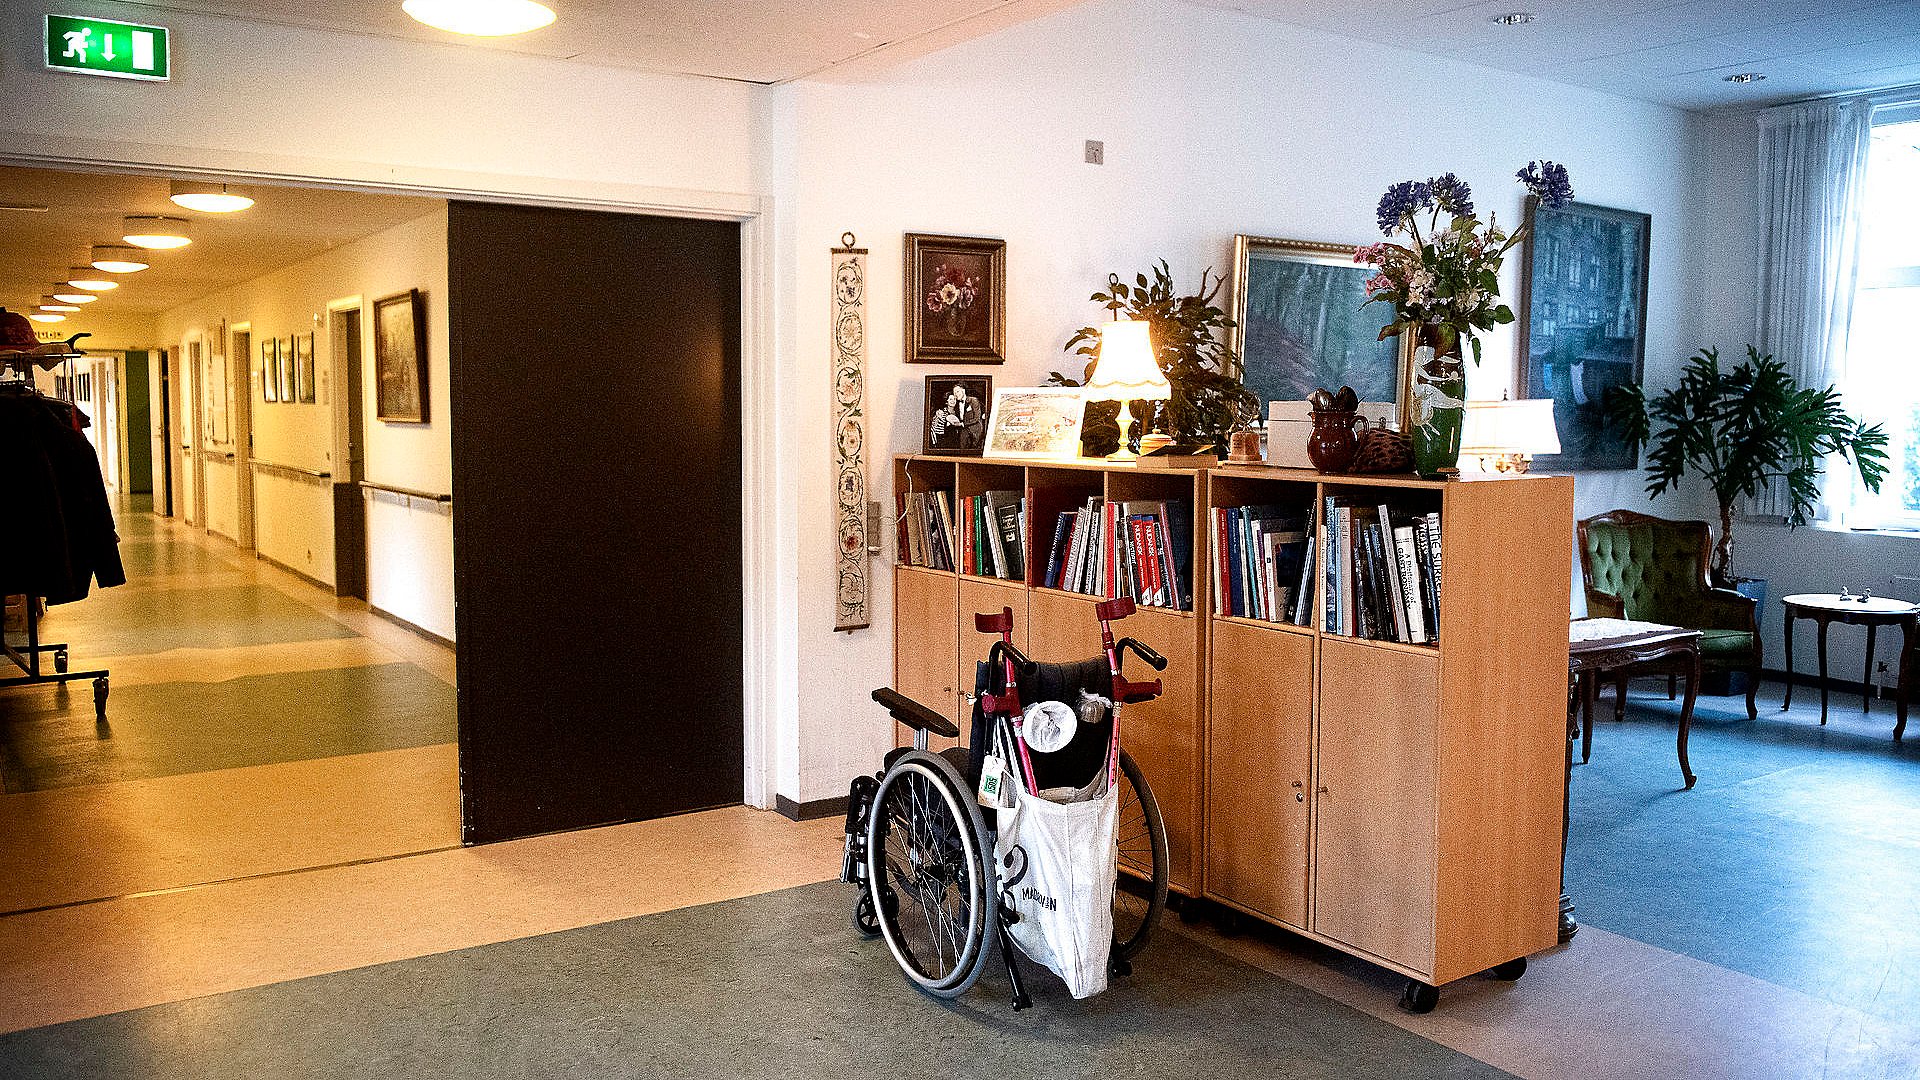 12 beboere på plejecenter i København med coronavirus | TV 2 Lorry